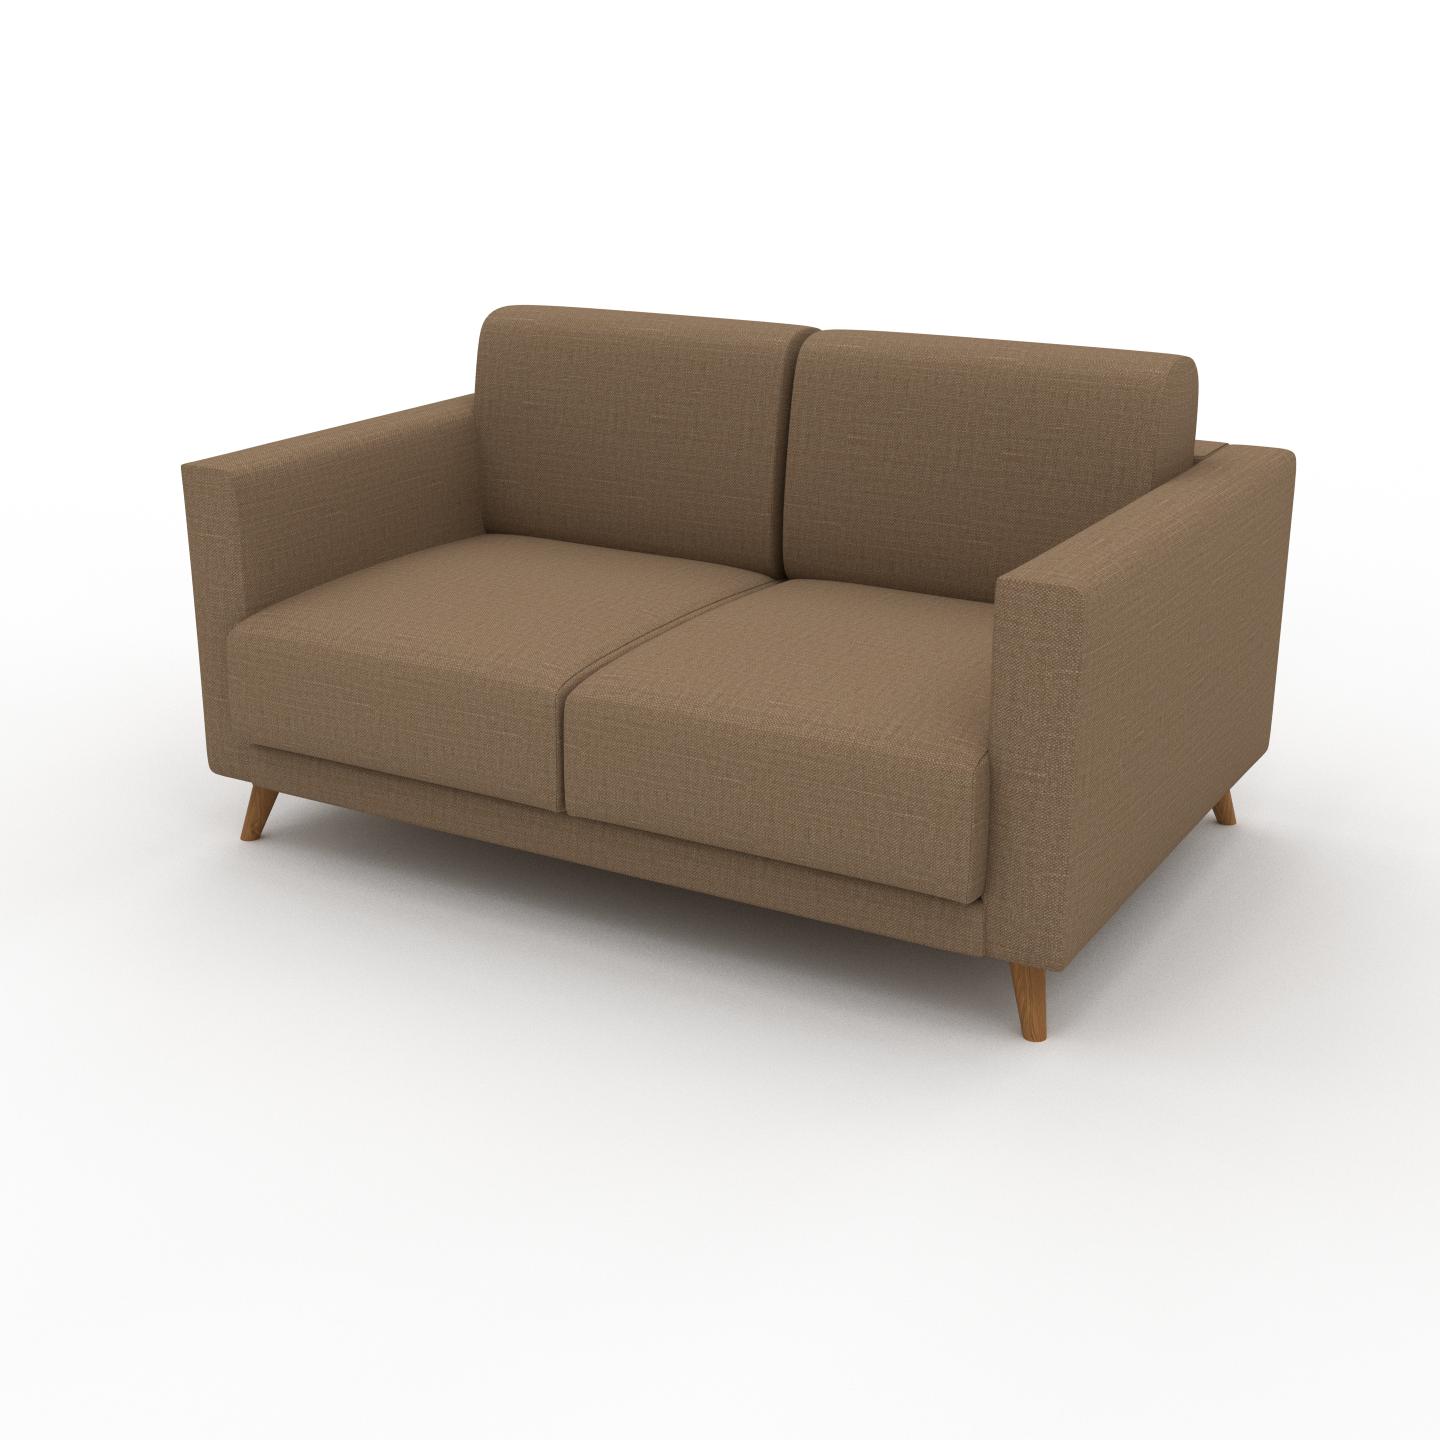 MYCS Sofa Karamell­braun - Moderne Designer-Couch: Hochwertige Qualität, einzigartiges Design - 145 x 75 x 98 cm, Komplett anpassbar